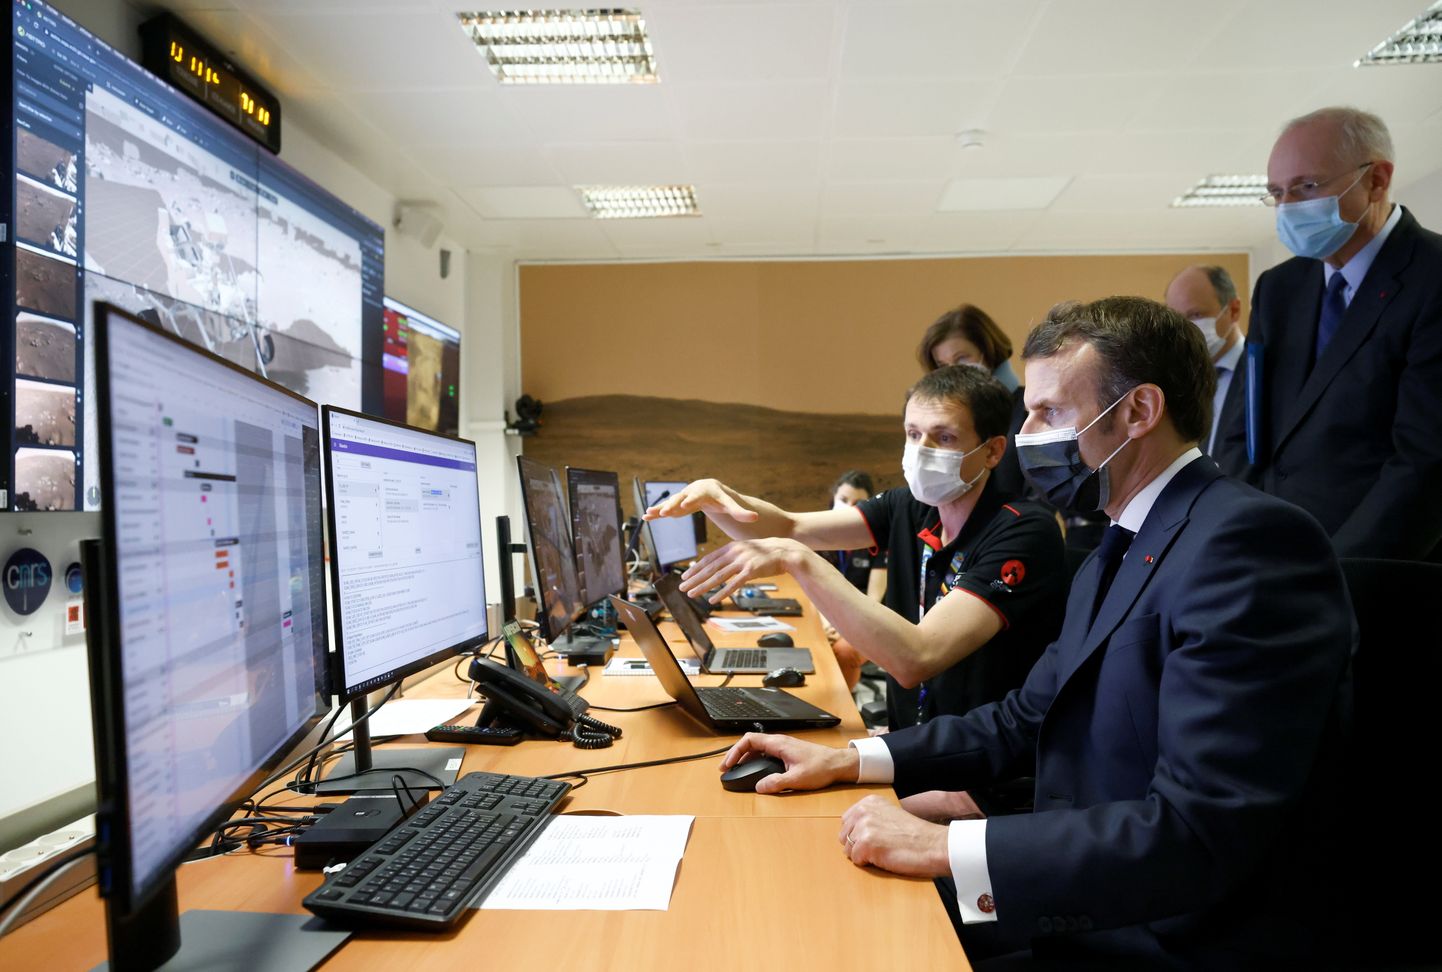 President Emmanuel Macron külastamas Prantsuse kosmoseagentuuri CNES peakorterit Toulouse'is.